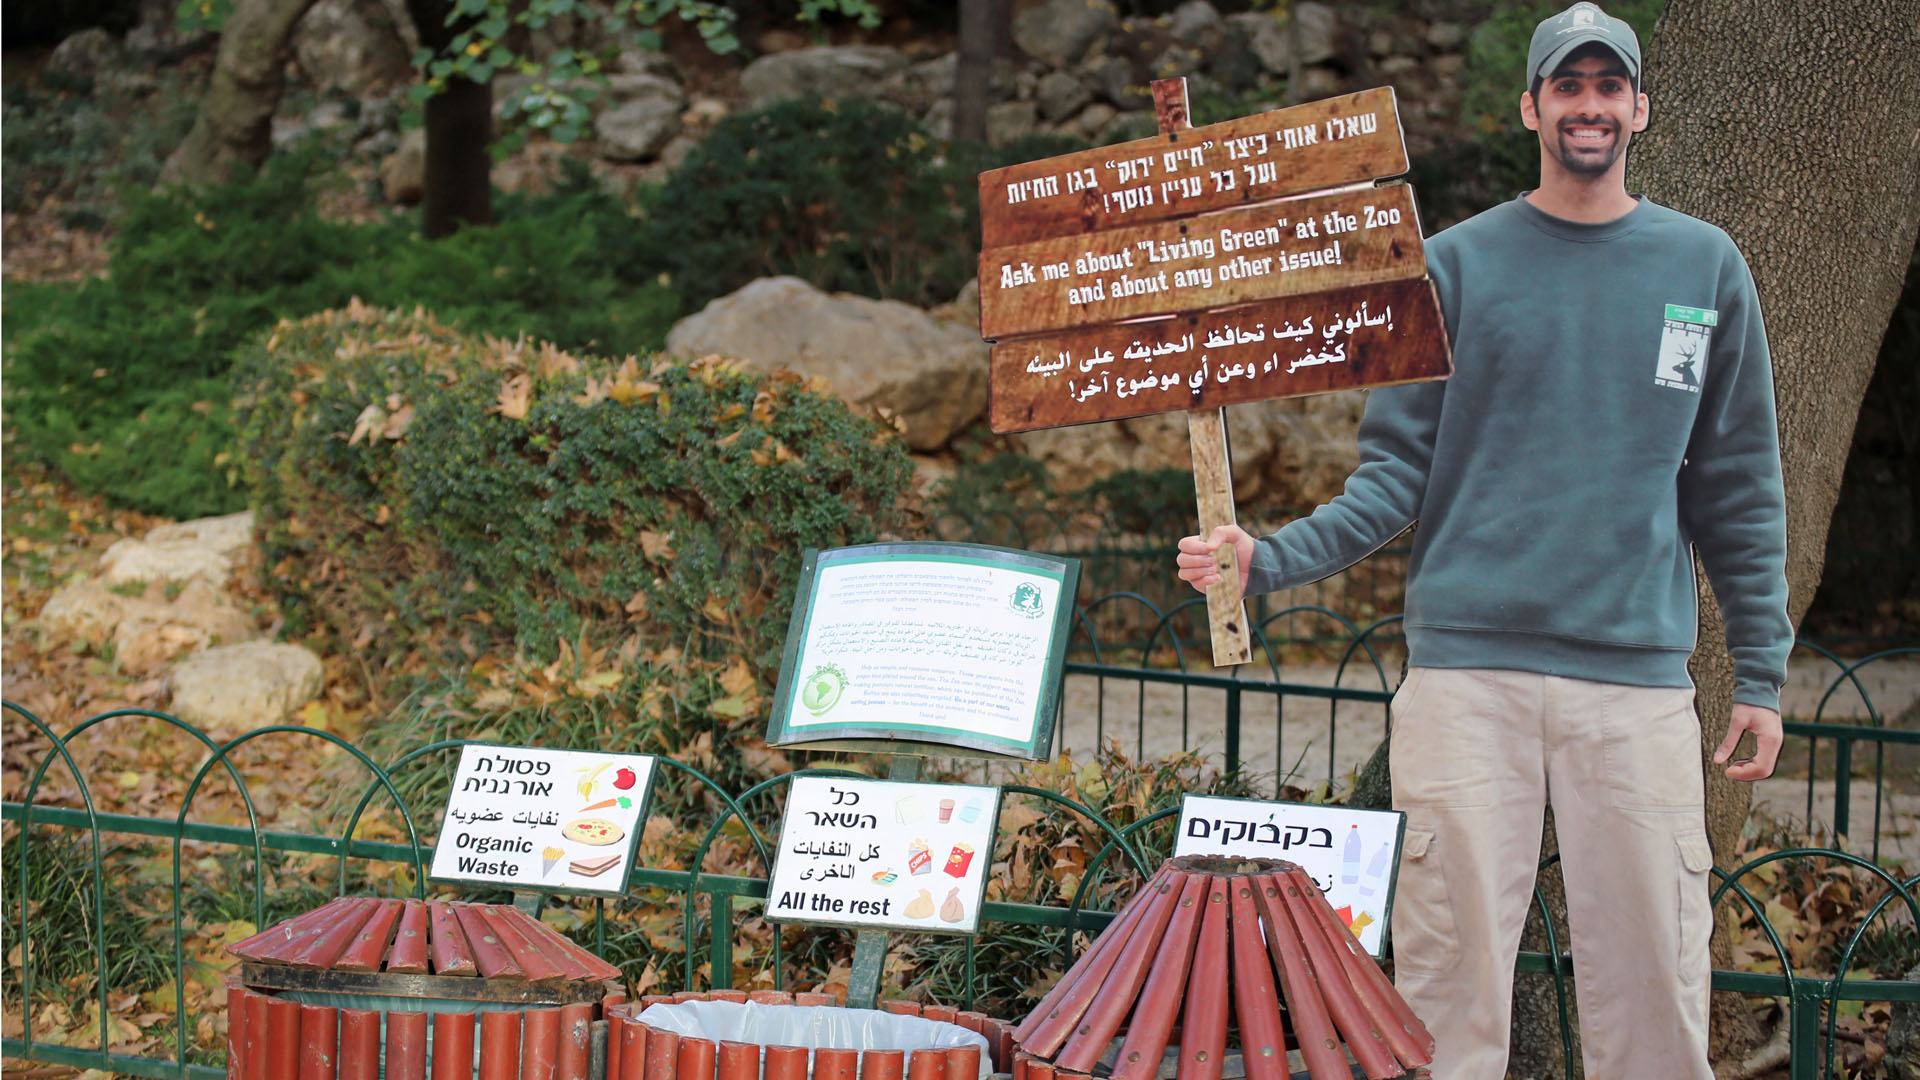 Die Besucher werden zur Mülltrennung aufgerufen und können sich über die umweltfreundliche Politik des Zoos informieren